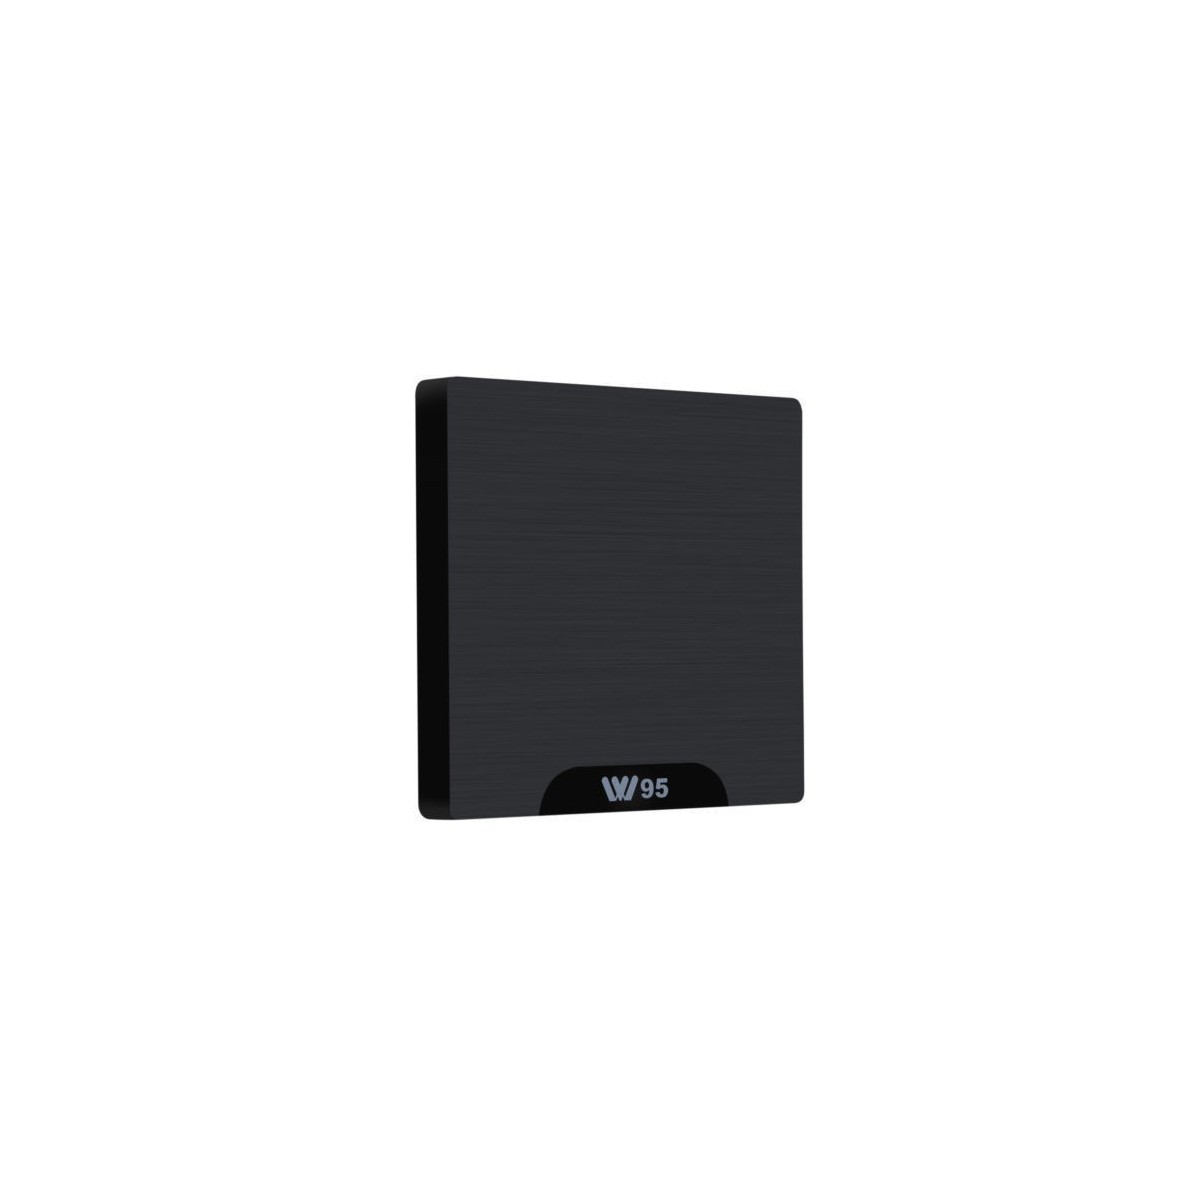 Décodeur multimédias Smart TV Box Android 7.1 W95 2G/16G